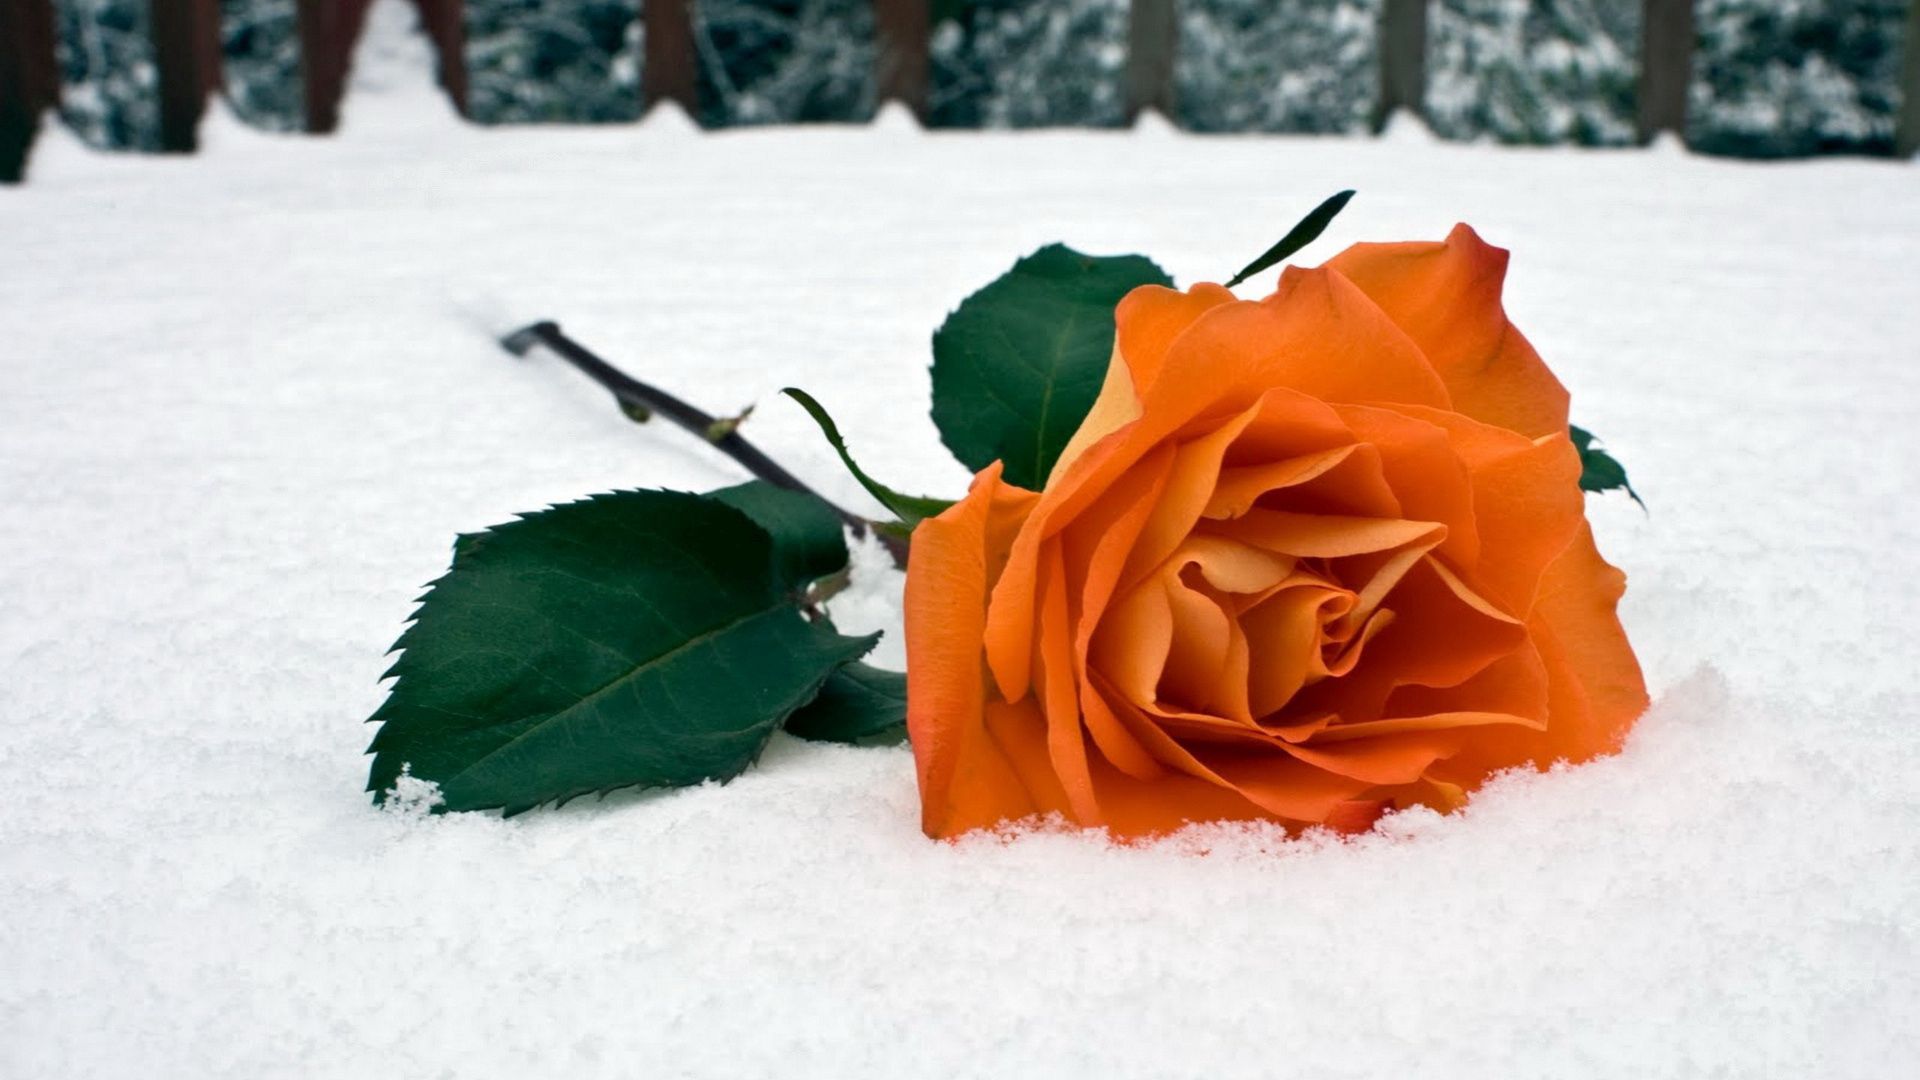 Скачать обои бесплатно Снег, Роза, Цветы, Листья, Цветок, Зима картинка на рабочий стол ПК